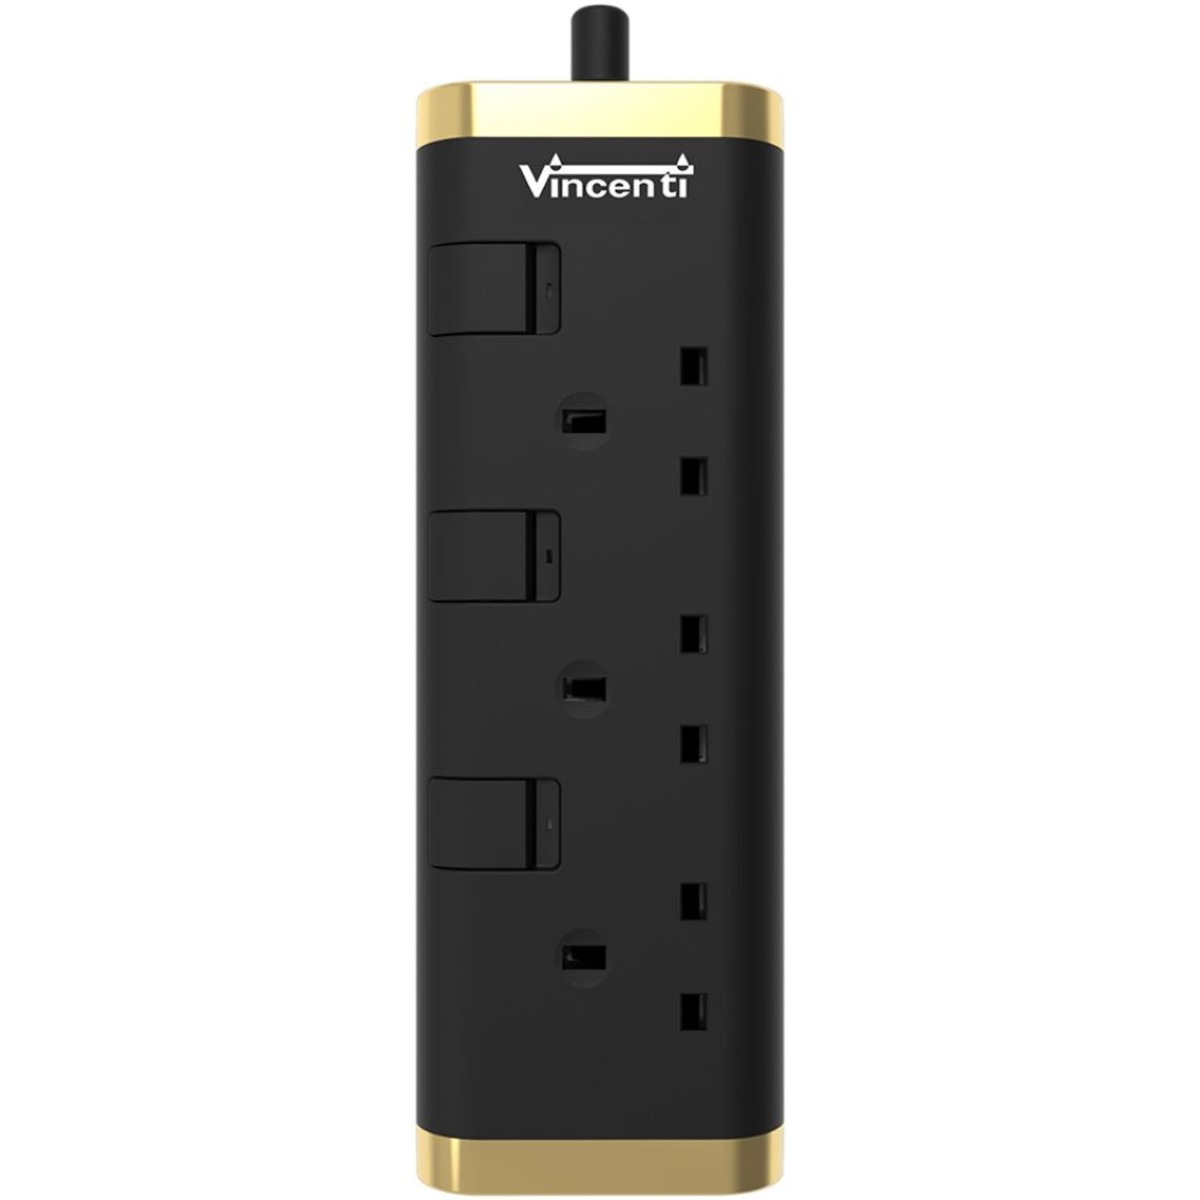 فينسيت توصيلة كهرباء 2 متر، 3 مخارج، مع USB-C، أسود/ذهبي - VPCMBG-32U